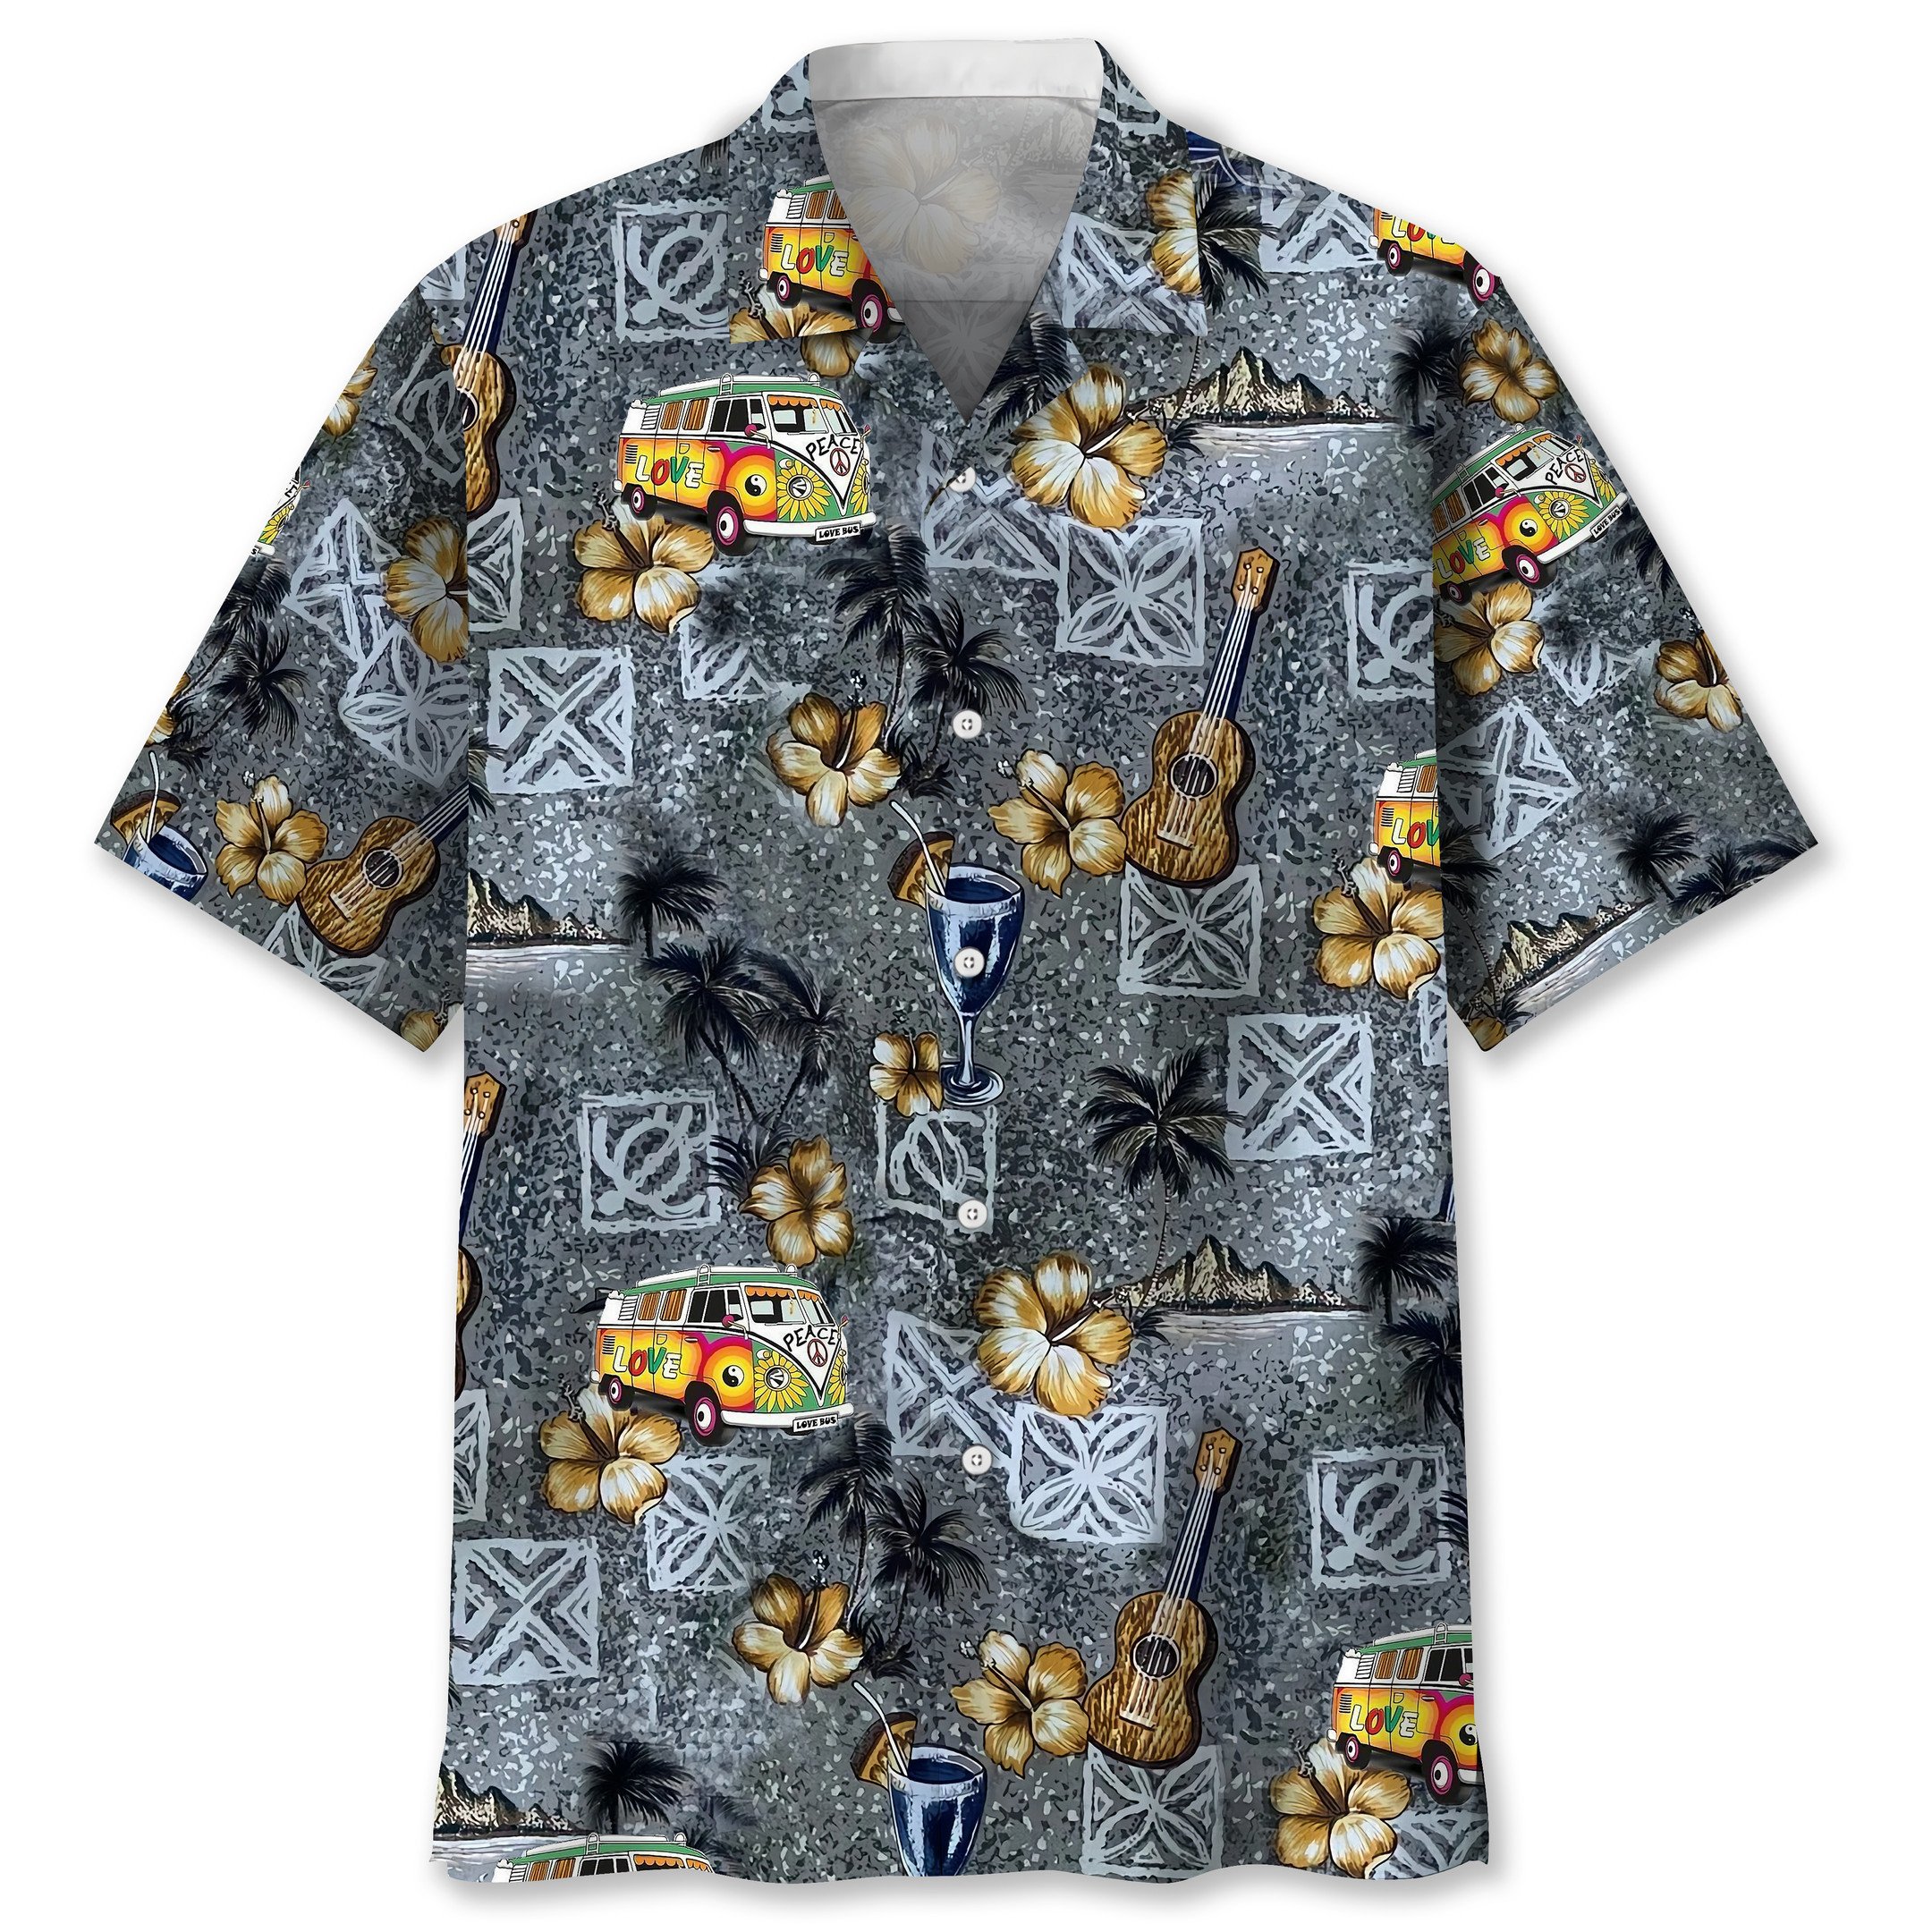 NEW Hippie Beach pattern Hawaiian Shirt